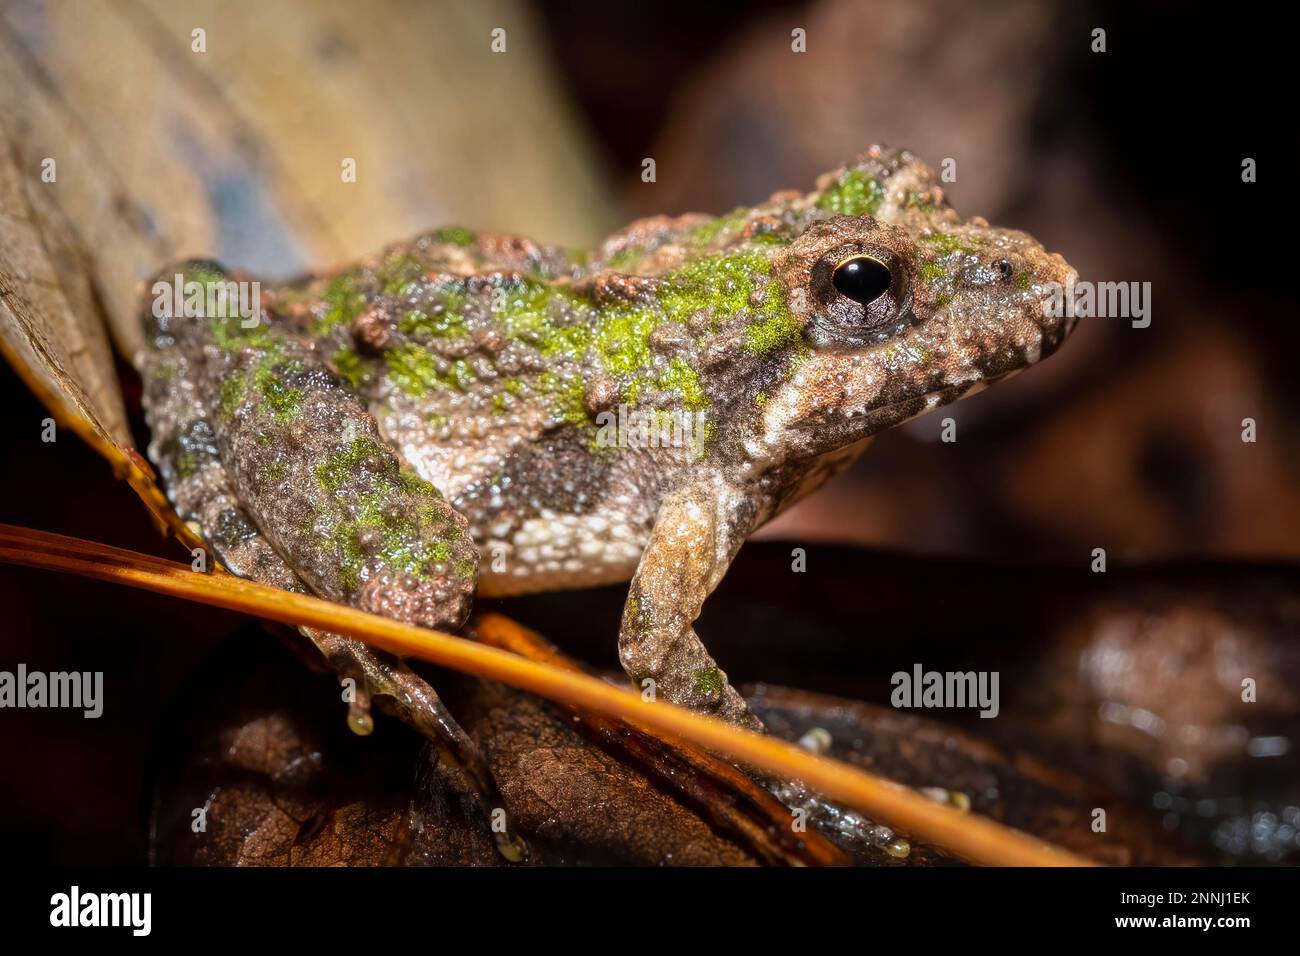 Profilo di una rana da cricket settentrionale con marcature verdi. Raleigh, North Carolina. Foto Stock